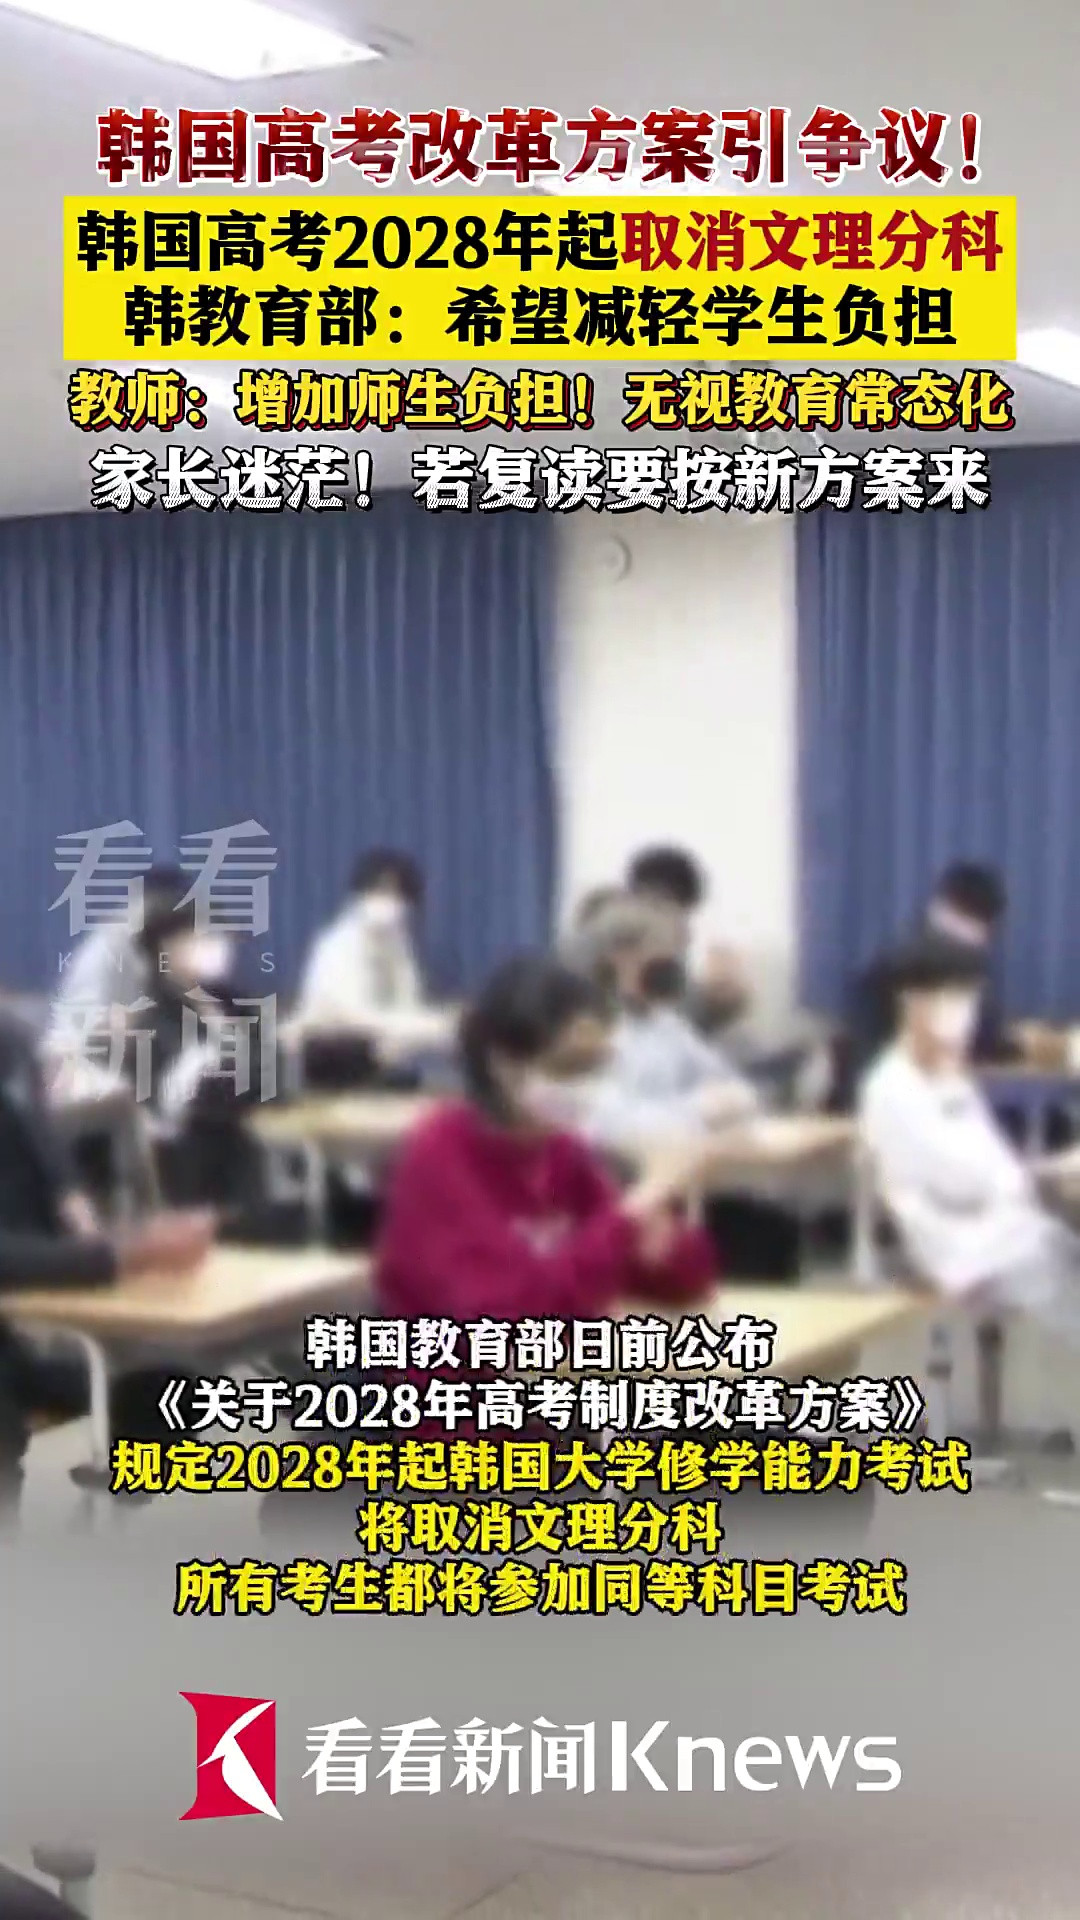 引争议! 韩国高考2028年起取消文理分科